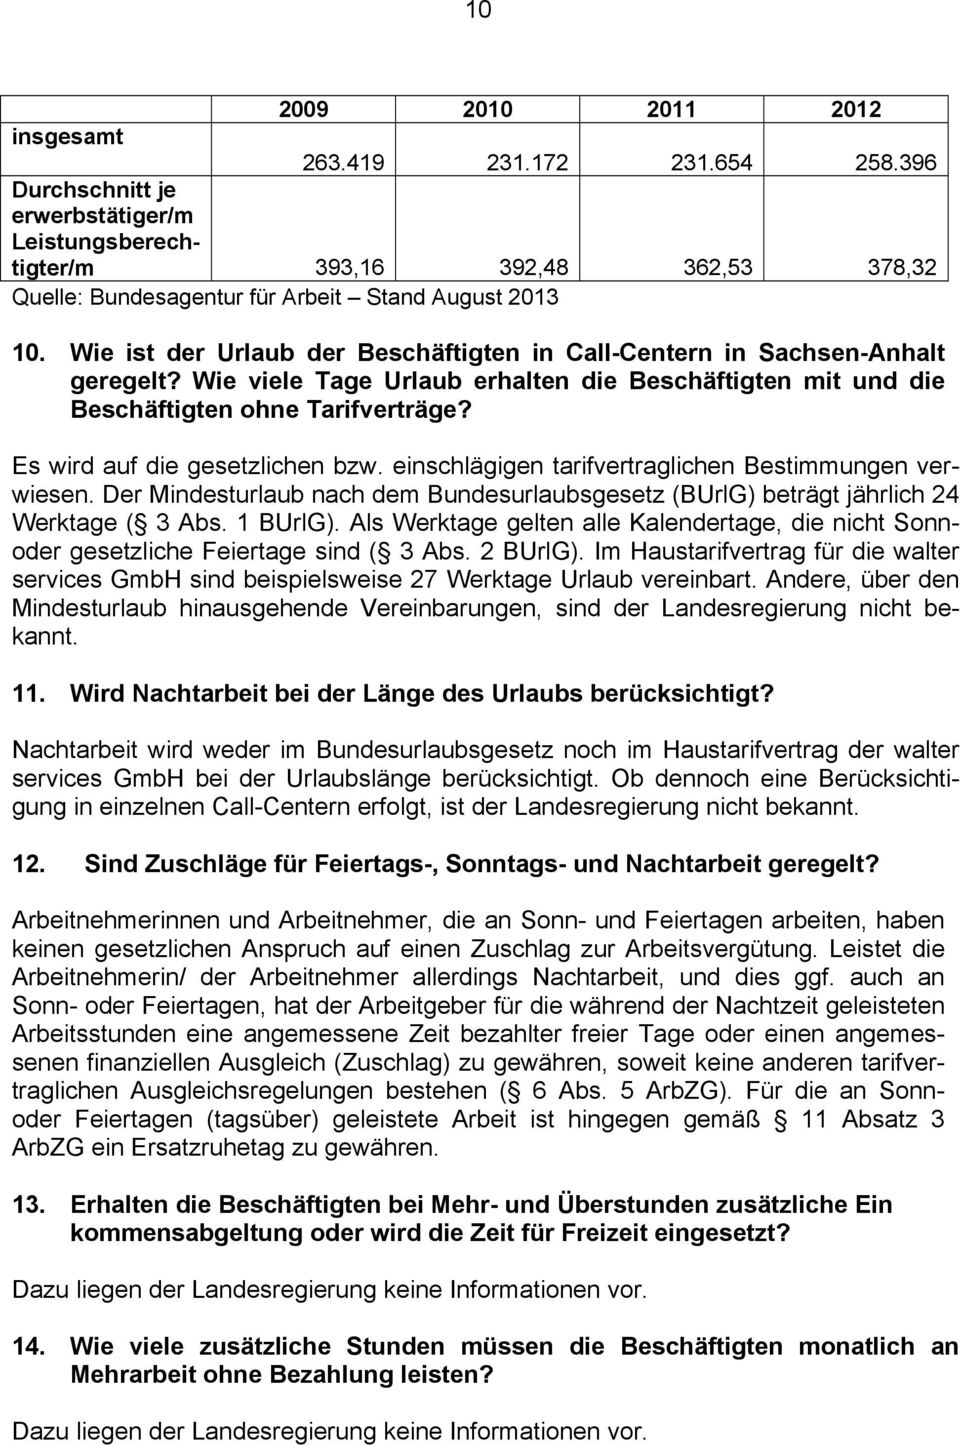 Wie ist der Urlaub der Beschäftigten in Call-Centern in Sachsen-Anhalt geregelt? Wie viele Tage Urlaub erhalten die Beschäftigten mit und die Beschäftigten ohne Tarifverträge?